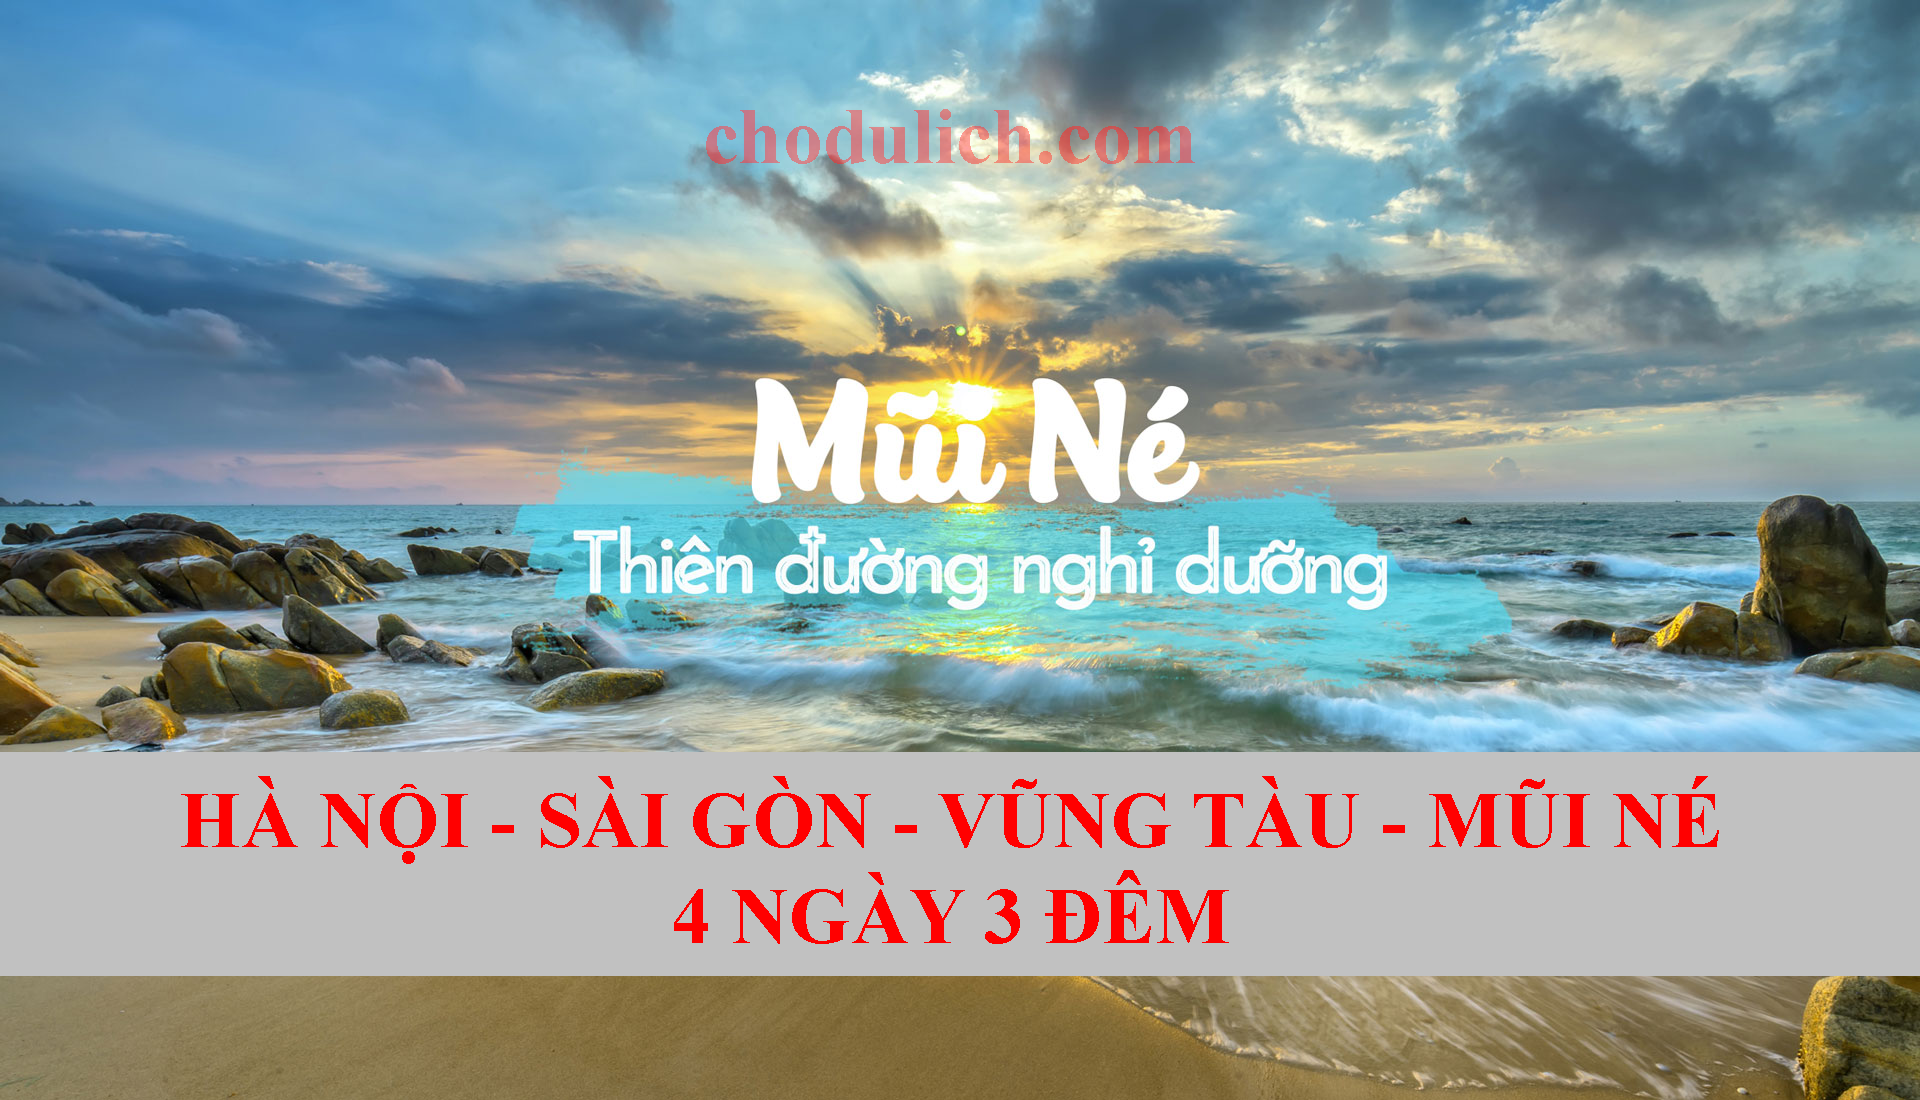 Hà Nội - Sài Gòn - Vũng Tàu - Mũi Né  4 Ngày 3 Đêm